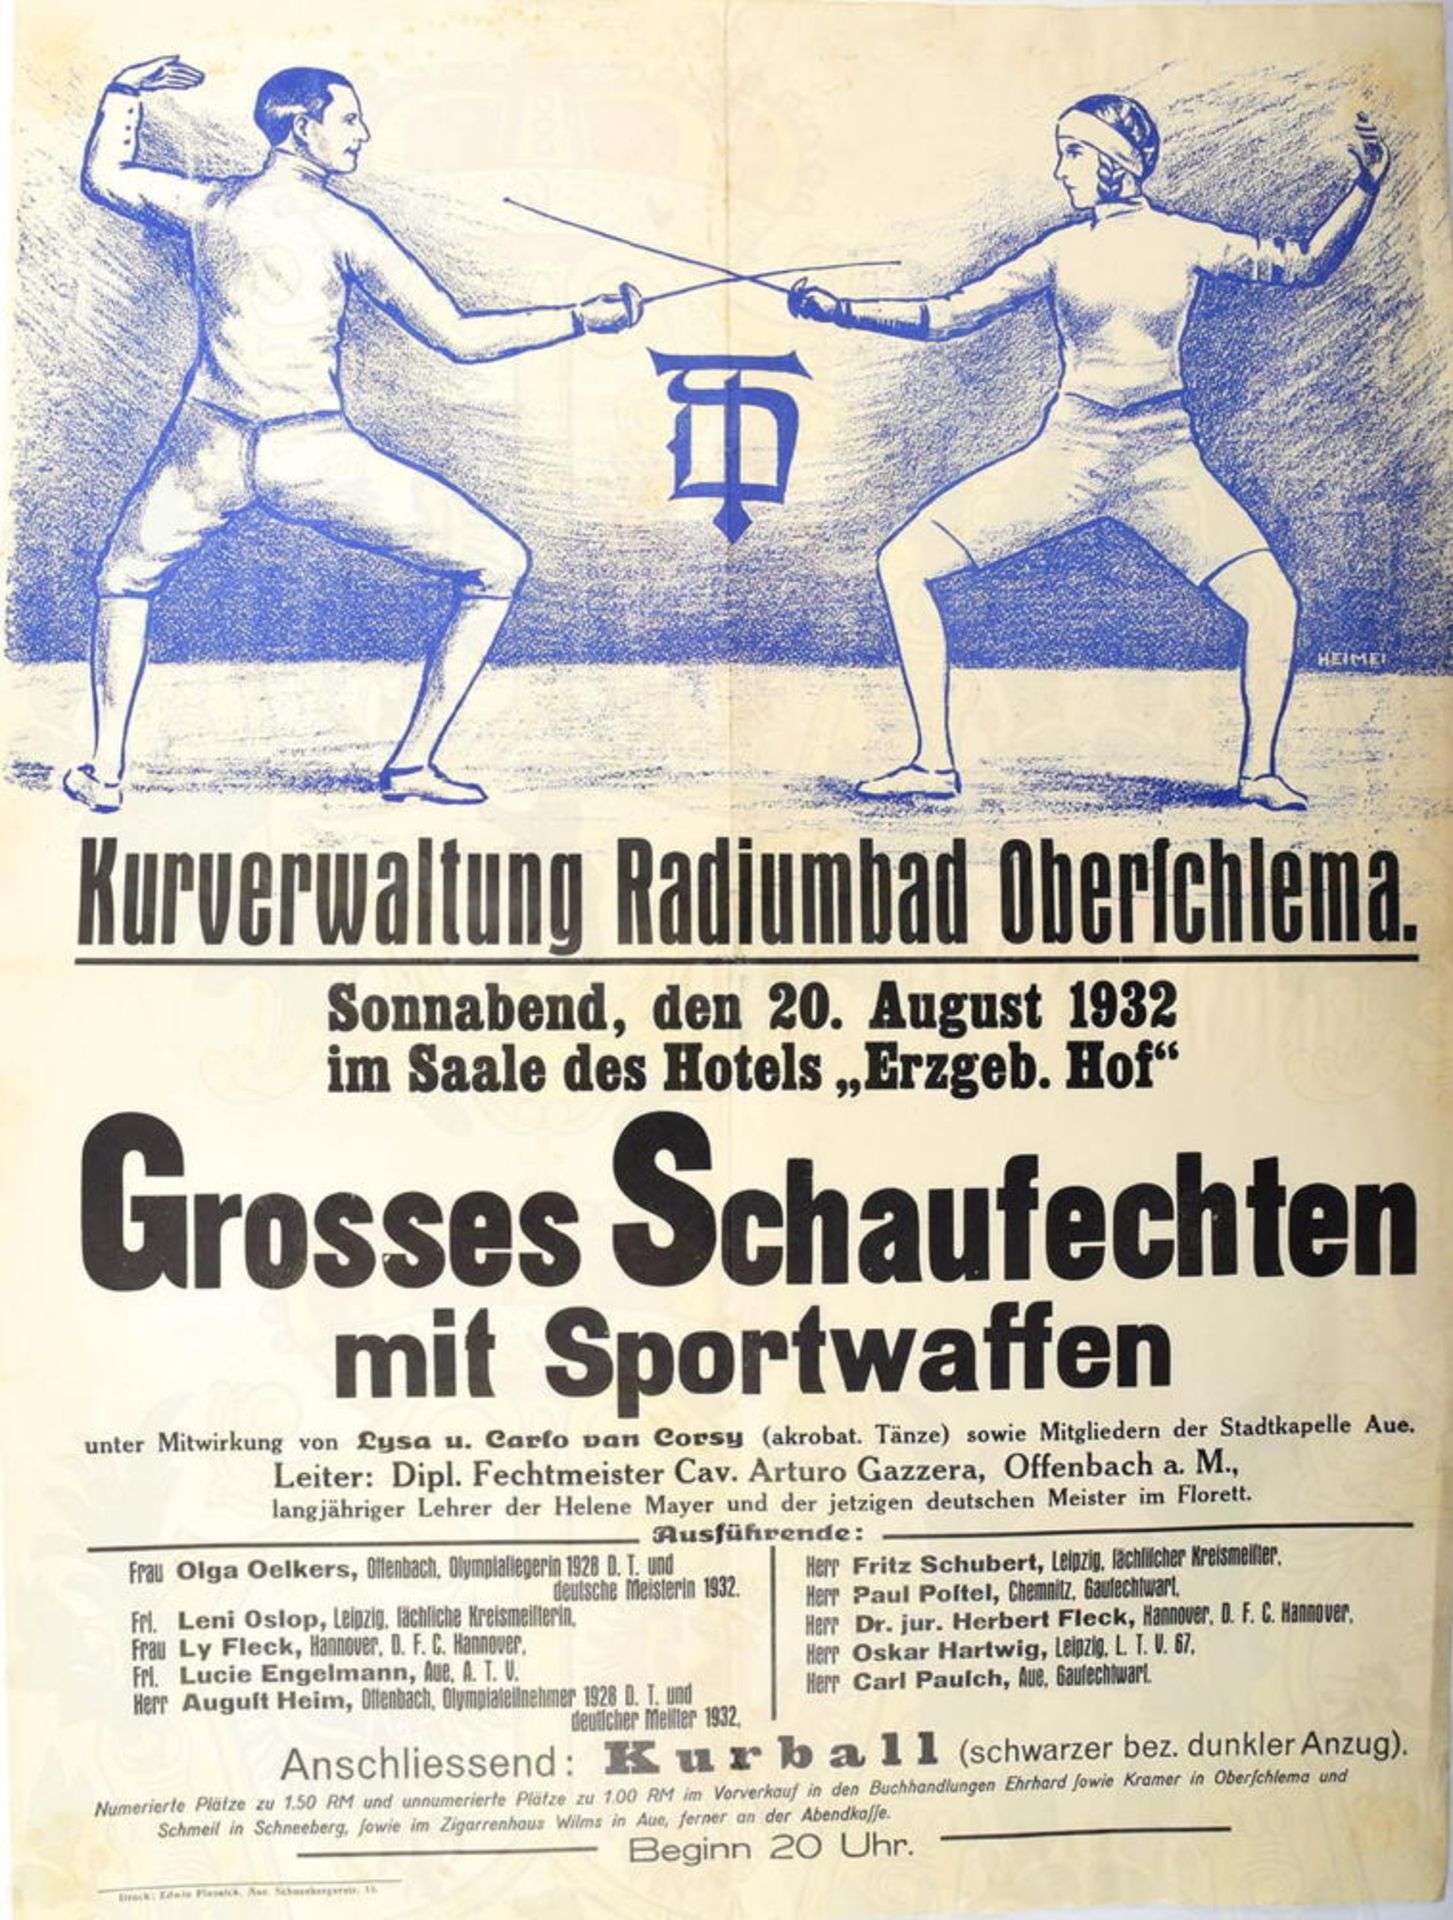 PLAKAT GROSSES SCHAUFECHTEN 1932, Kurverwaltung Radiumbad Oberschlema, 20. Aug. 1932 im Saal d.